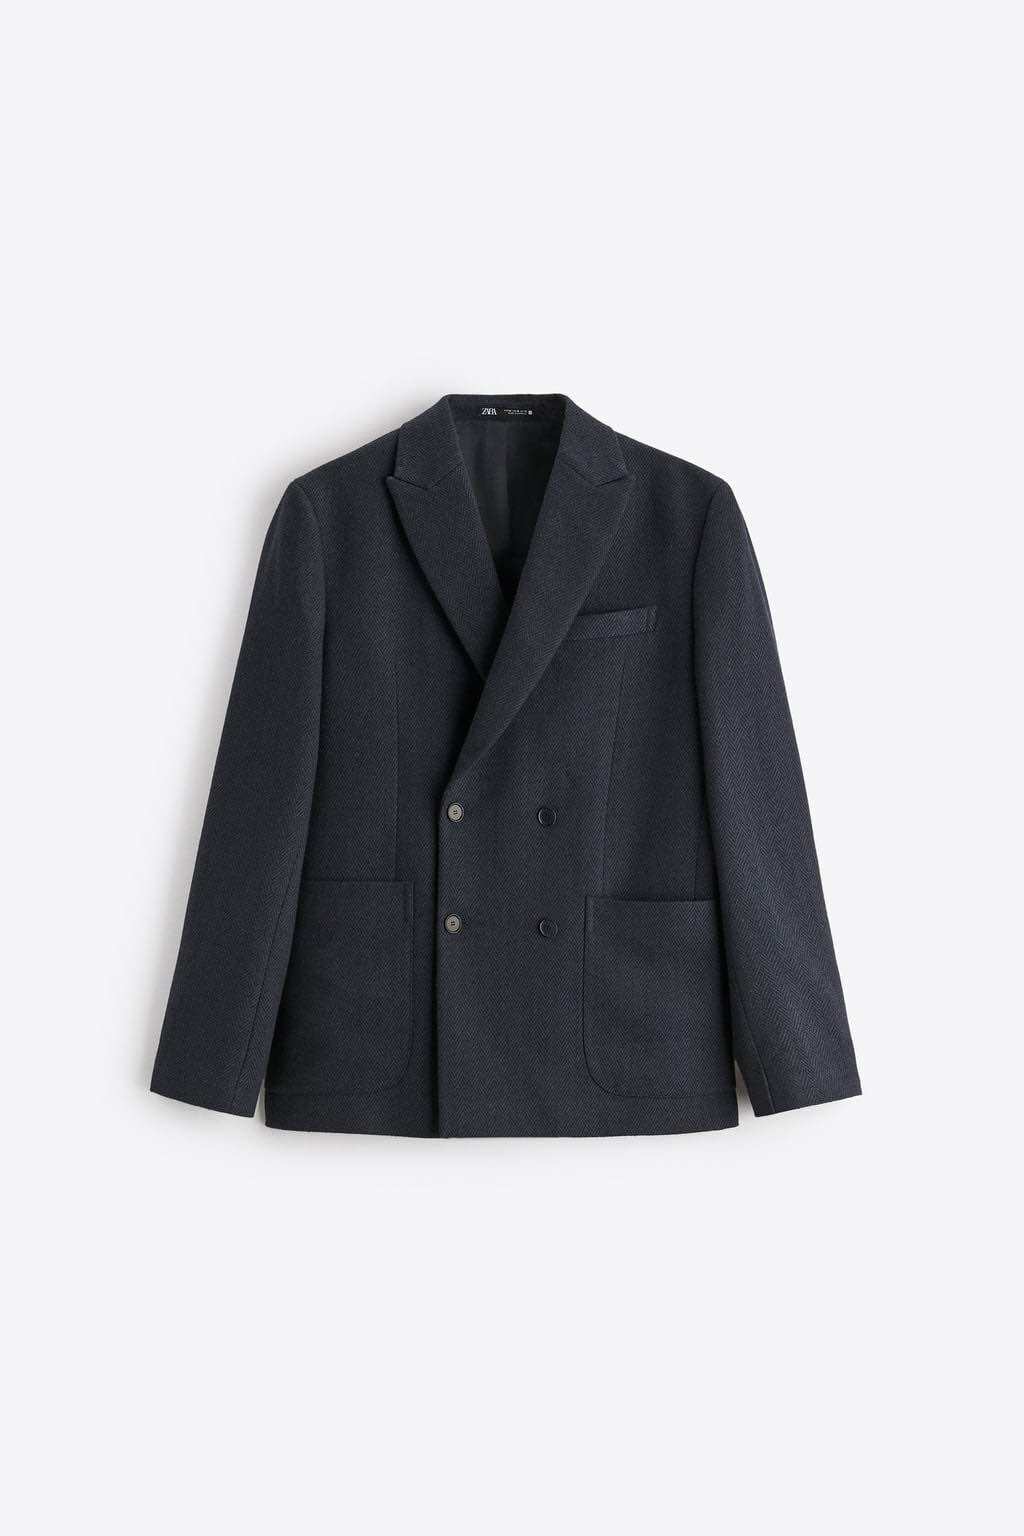 Áo khoác blazer Zara authentic DOUBLE-BREASTED HERRINGBONE size 46